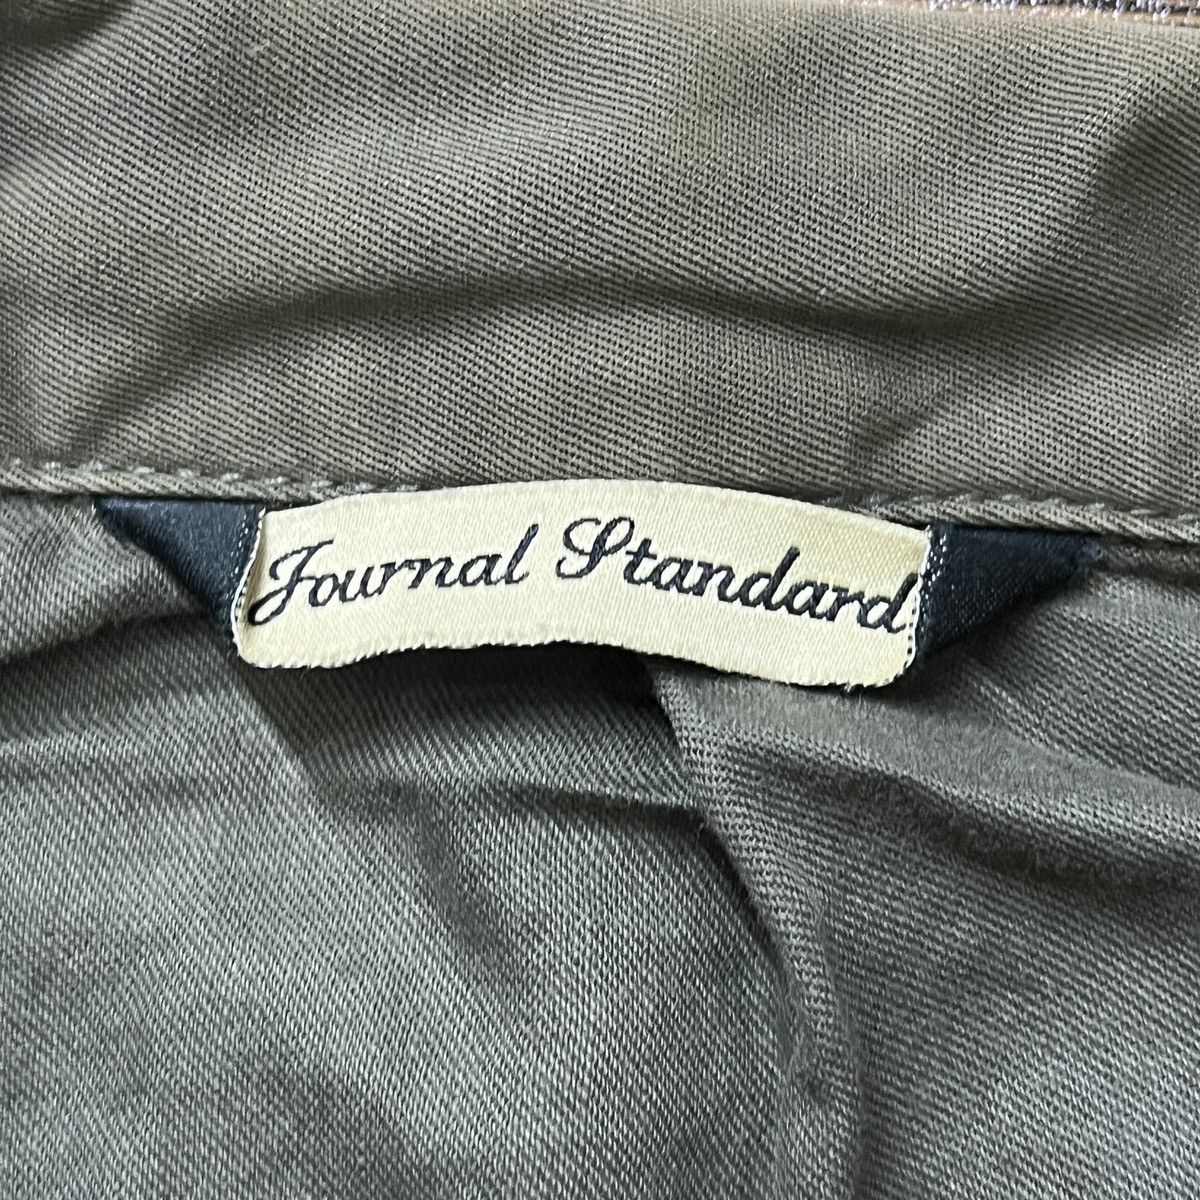 Vintage Journal Standard Light Pockets Jacket - 5